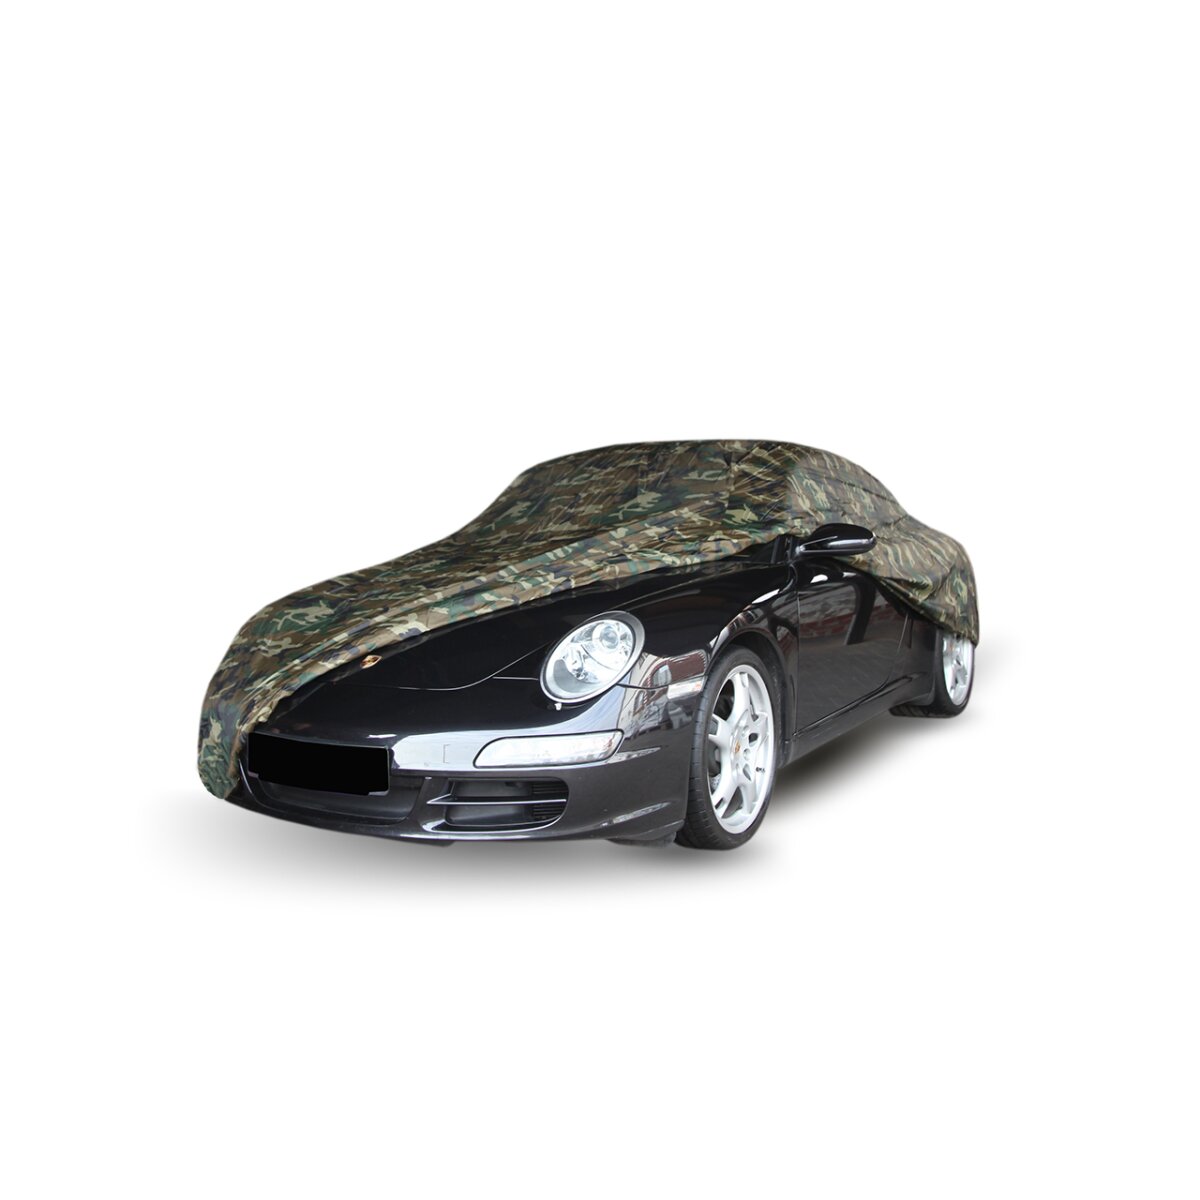 Autoabdeckung Car Cover Camouflage für Audi A3 Limousine (8Y), 65,00 €